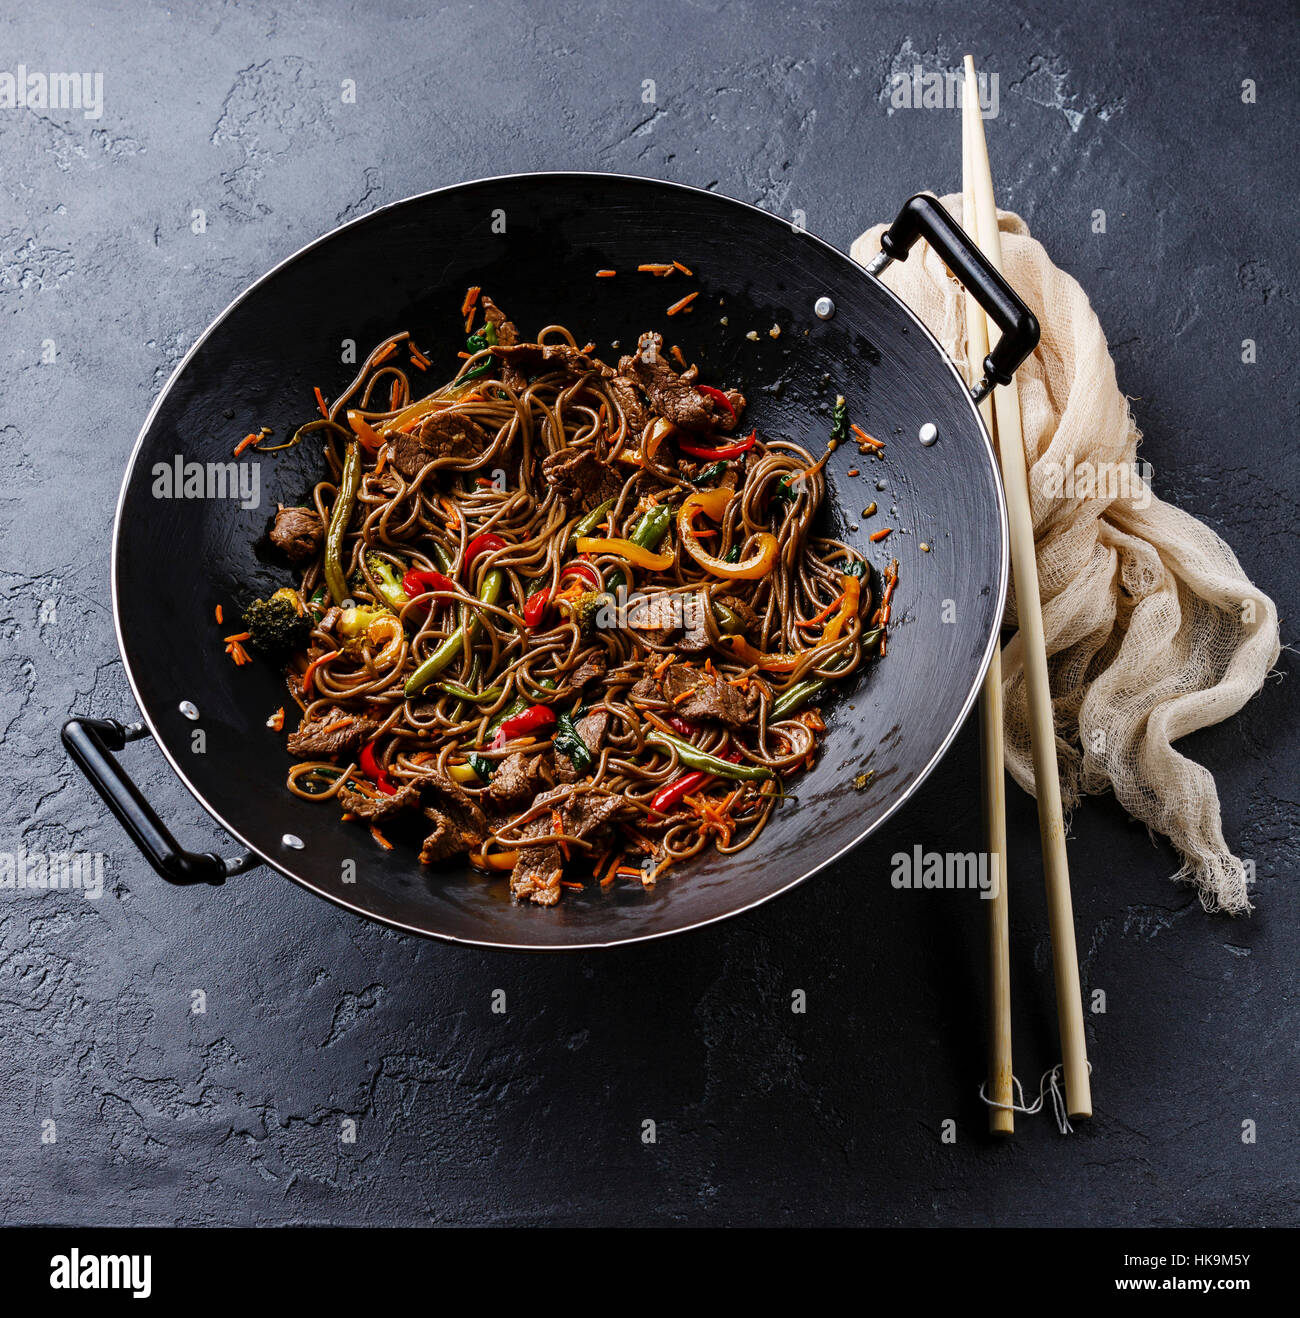 Yakisoba nouilles sautés au boeuf et légumes en wok casserole sur fond noir en sombre Banque D'Images